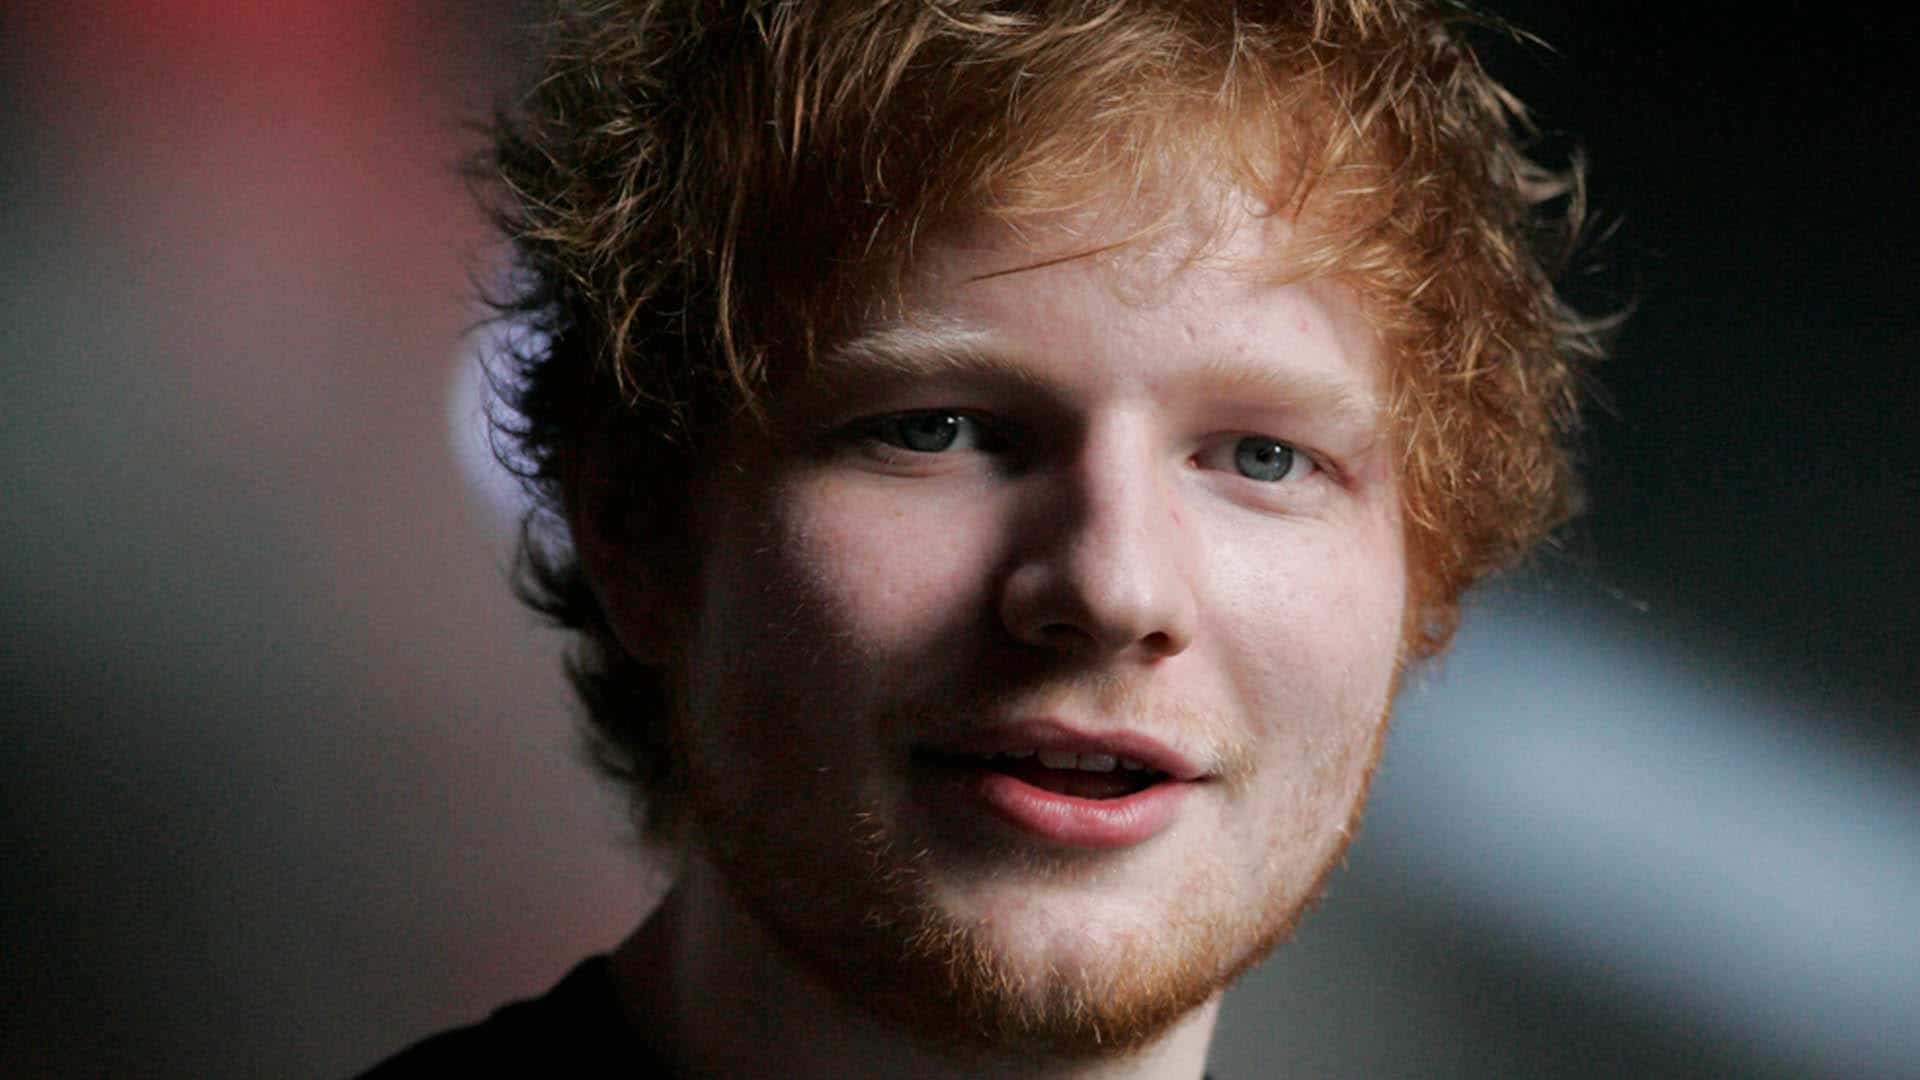 Der britische Sänger Ed Sheeran möchte auf seinem Grundstück eine Kirche für Hochzeiten und Taufen bauen